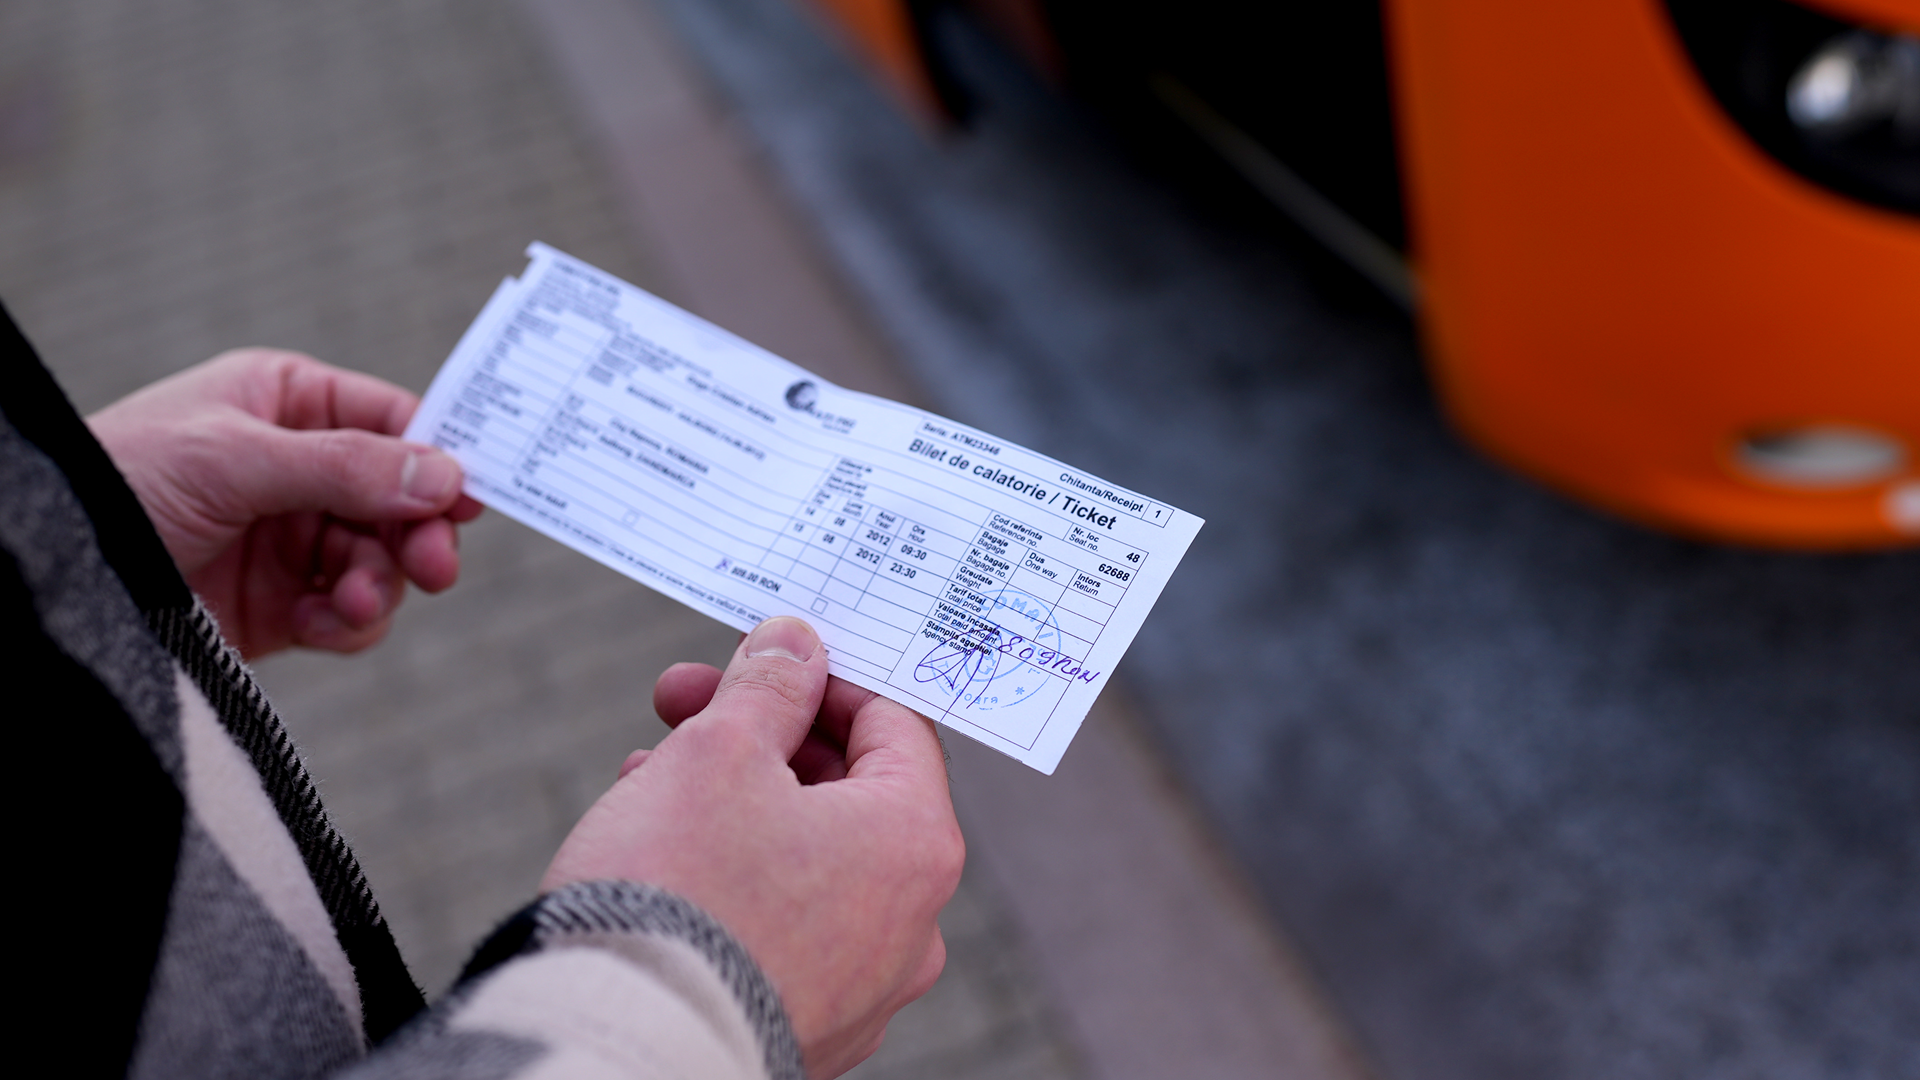 Cristian Goga har gemt sin busbillet fra Baia Mare til Aalborg fra sommeren 2012. Bussen punkterede undervejs, så rejsen varede 39 timer. Foto: Caroline Bundgaard